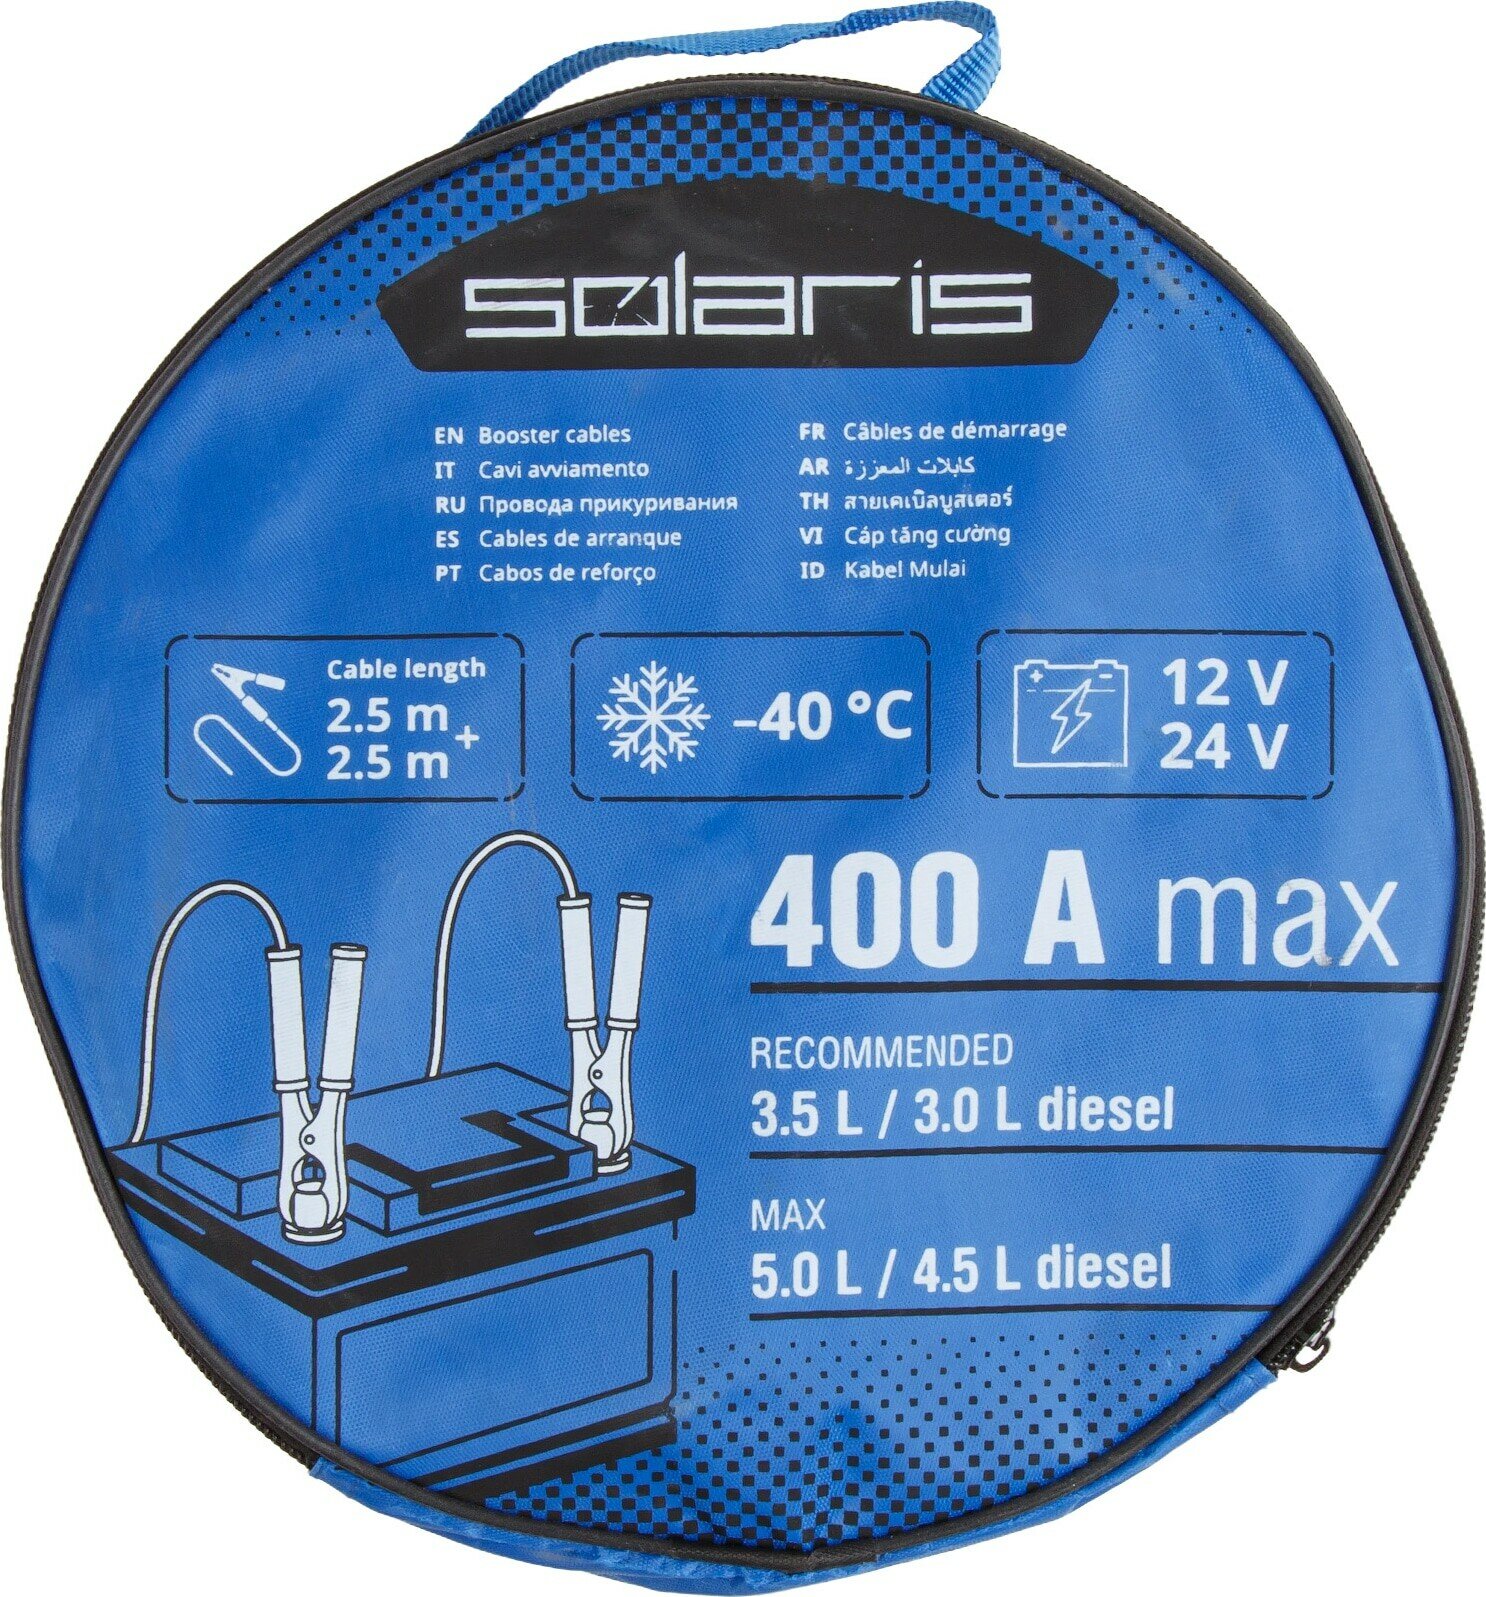 Провода прикуривания 400 Ампер SOLARIS (SL2910-2)